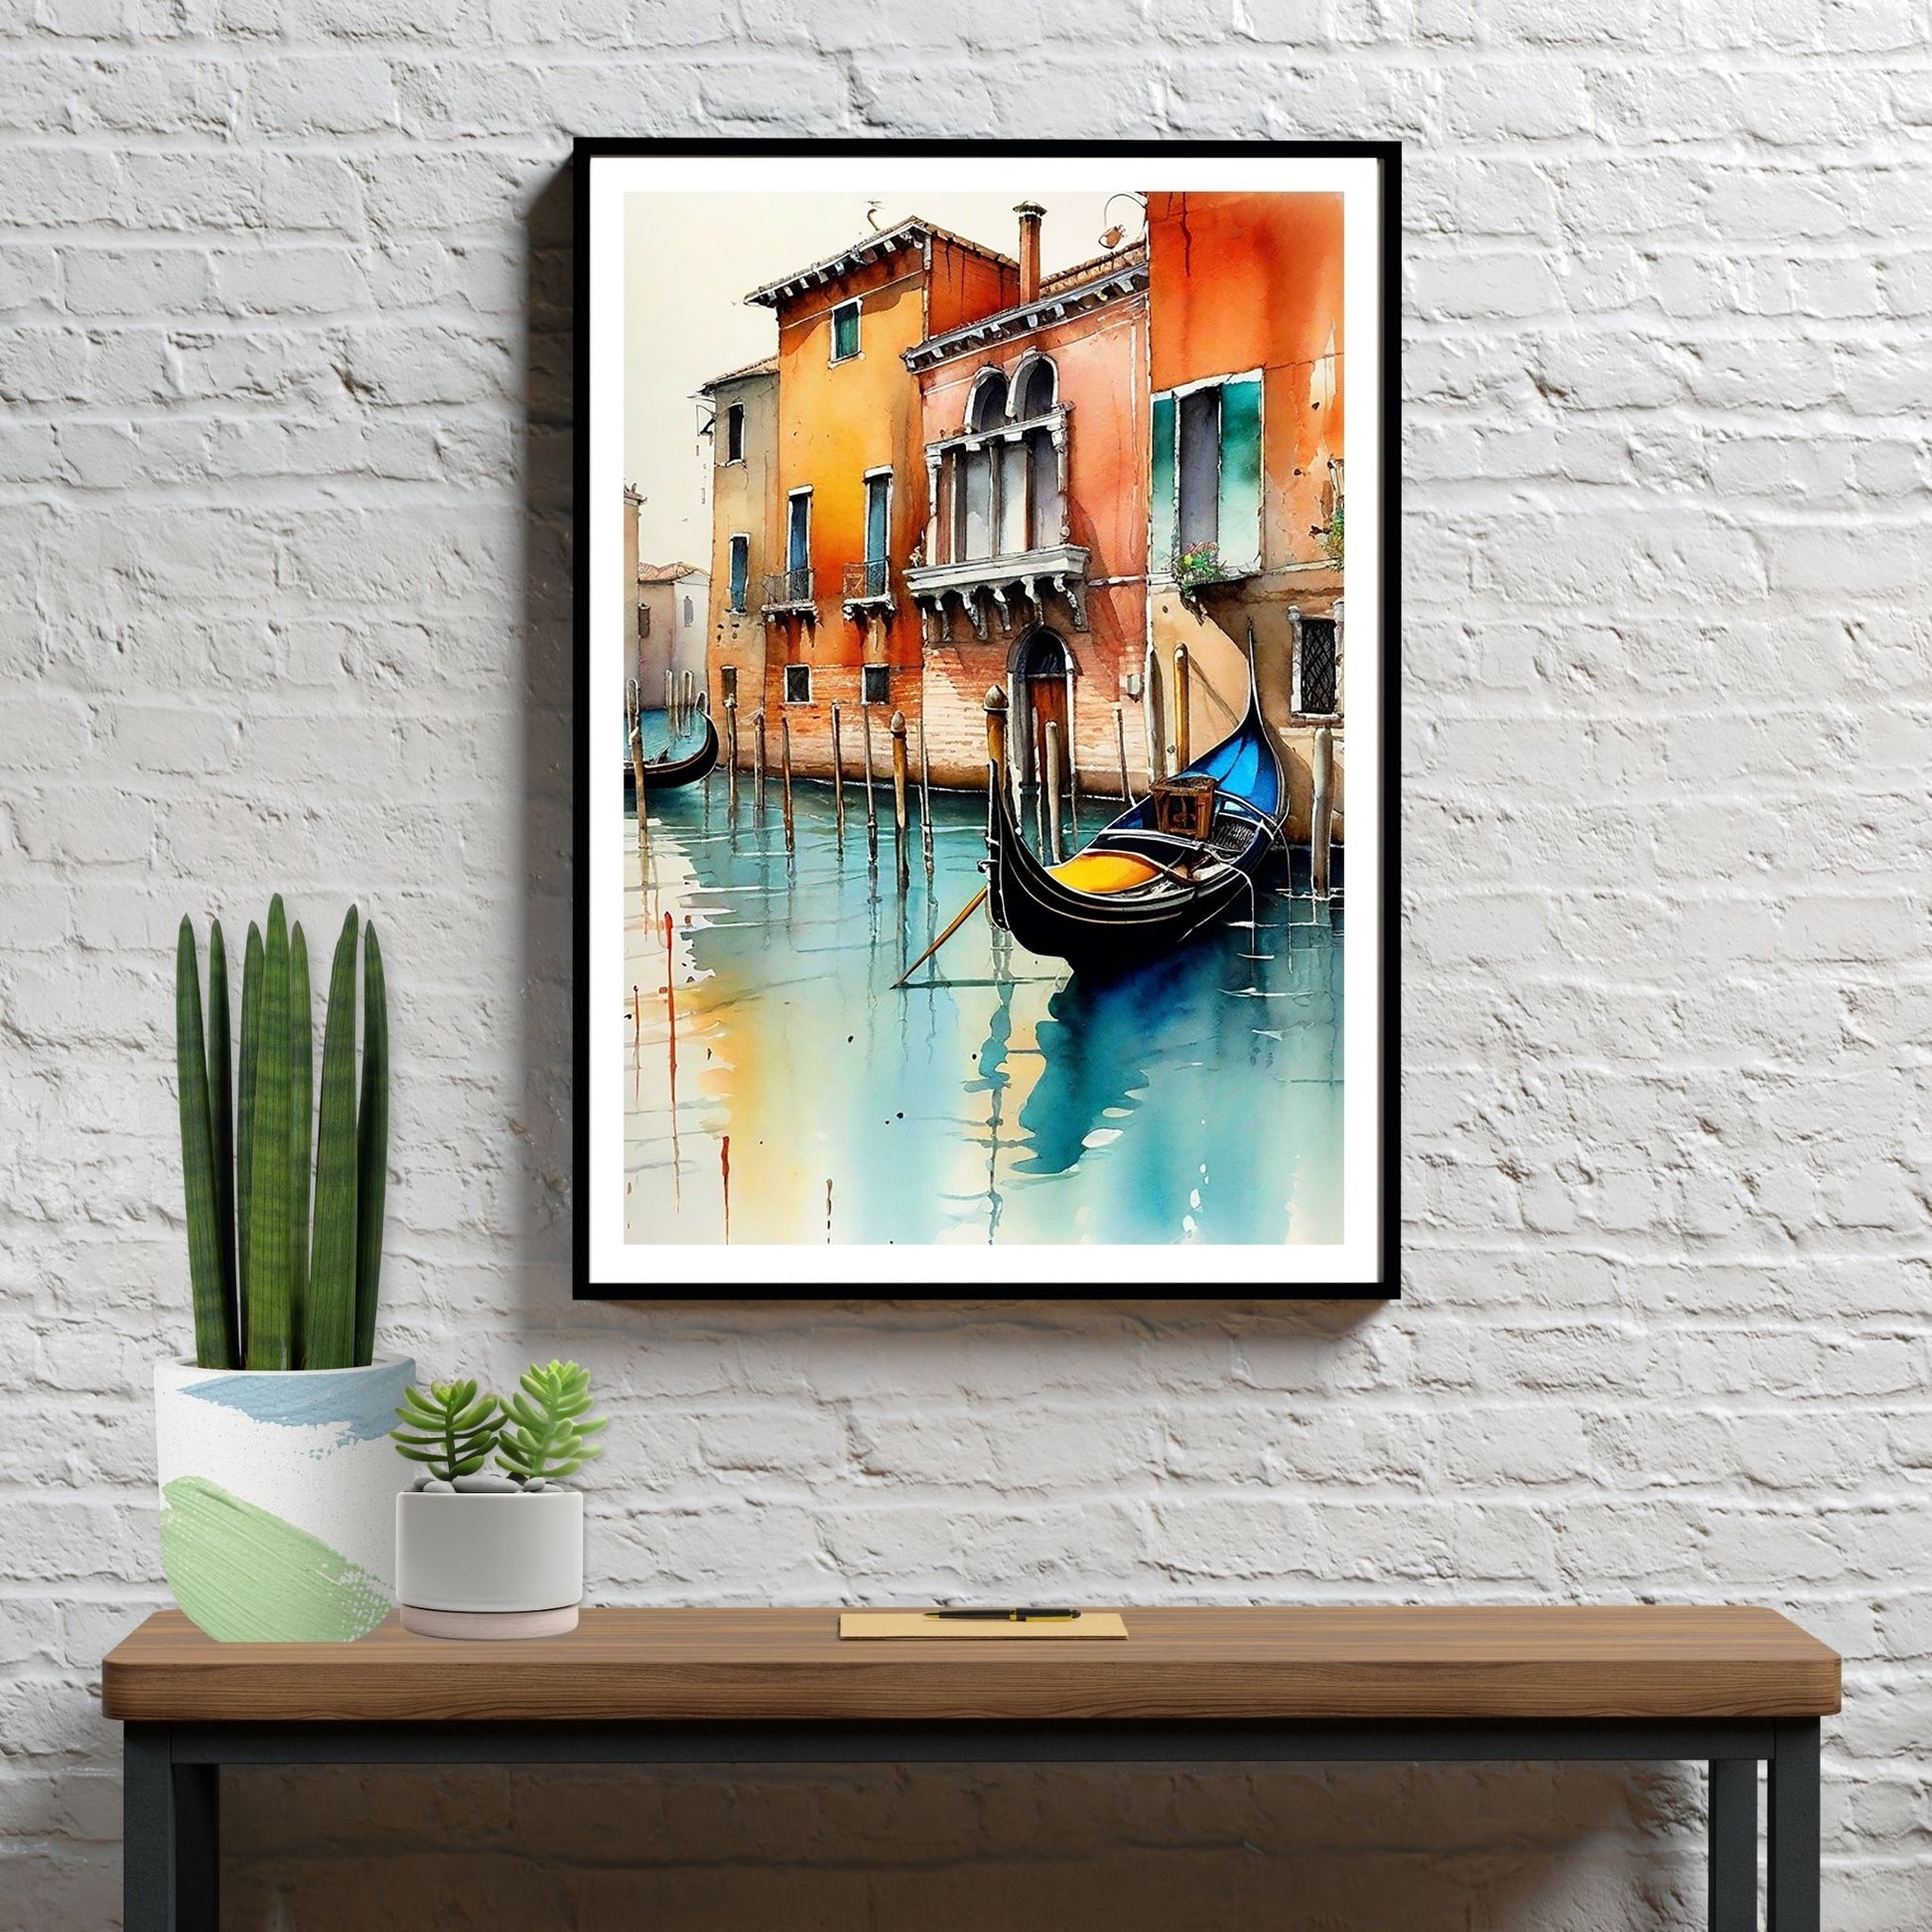 Med en fantastisk grafisk akvarell gjenskaper vi magien fra Venezia og de berømte gondolene som ligger på de pittoreske kanalene, omkranset av fargerike bygninger som speiler seg i det rolige vannet. Illustrasjonen viser motivet som plakat i sort ramme.